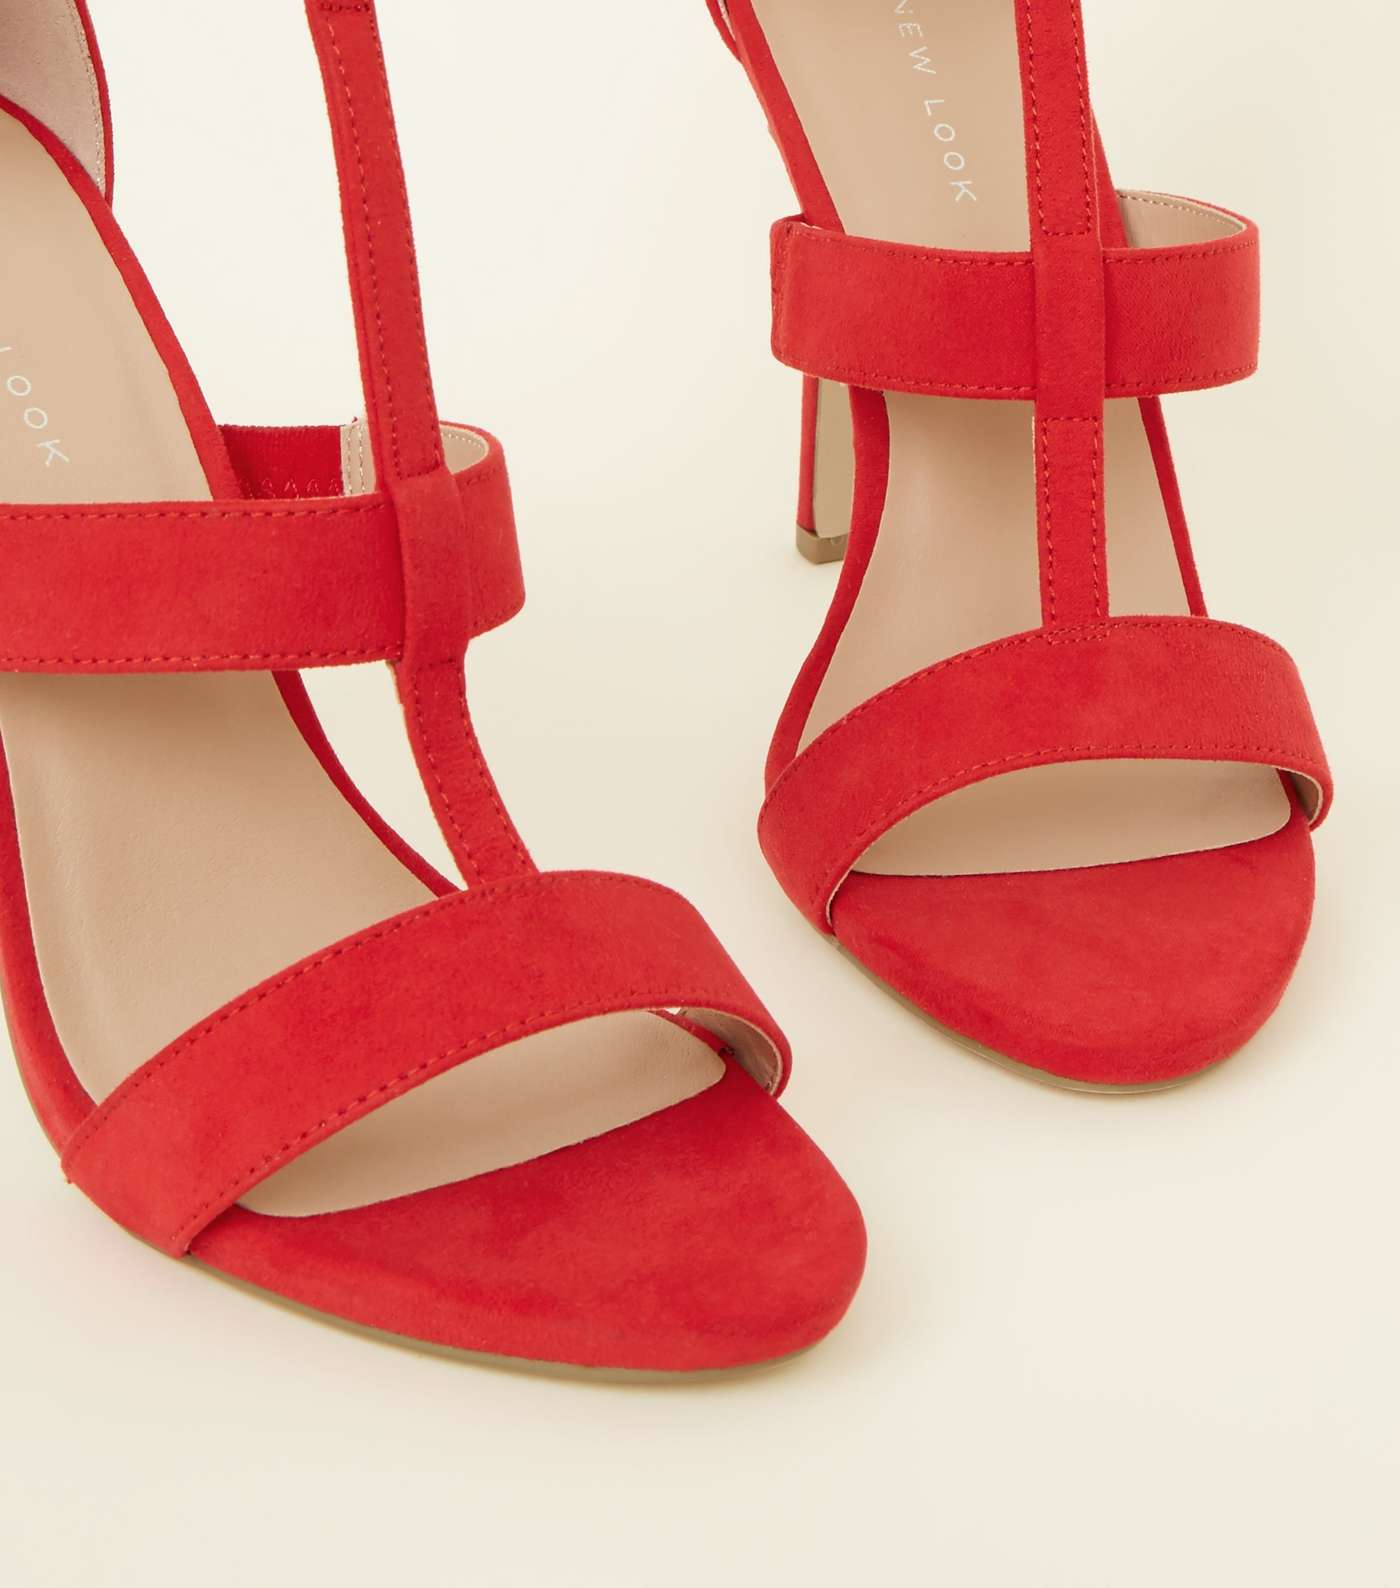 Red Suedette Stiletto Heel Gladiator Sandals Image 4